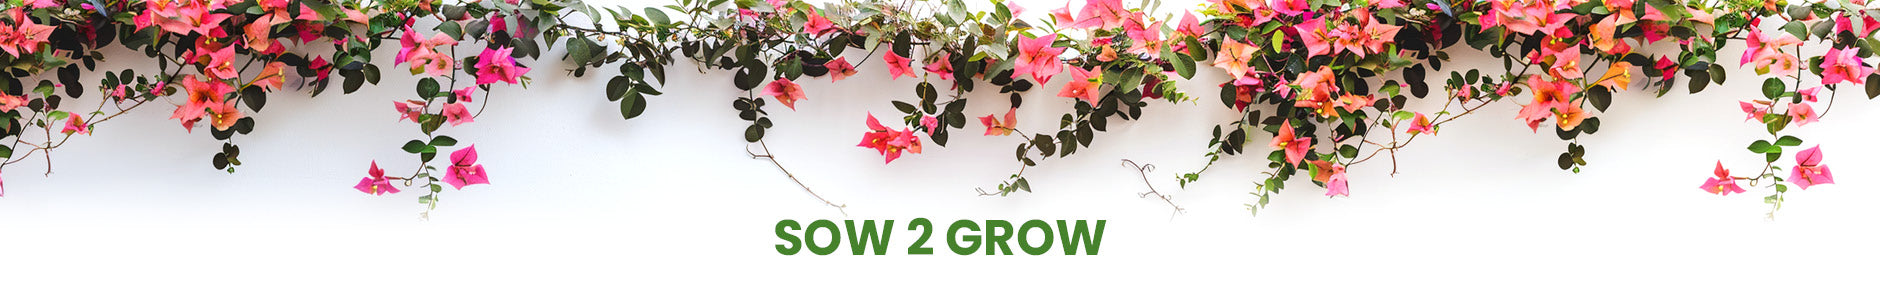 Sow 2 Grow